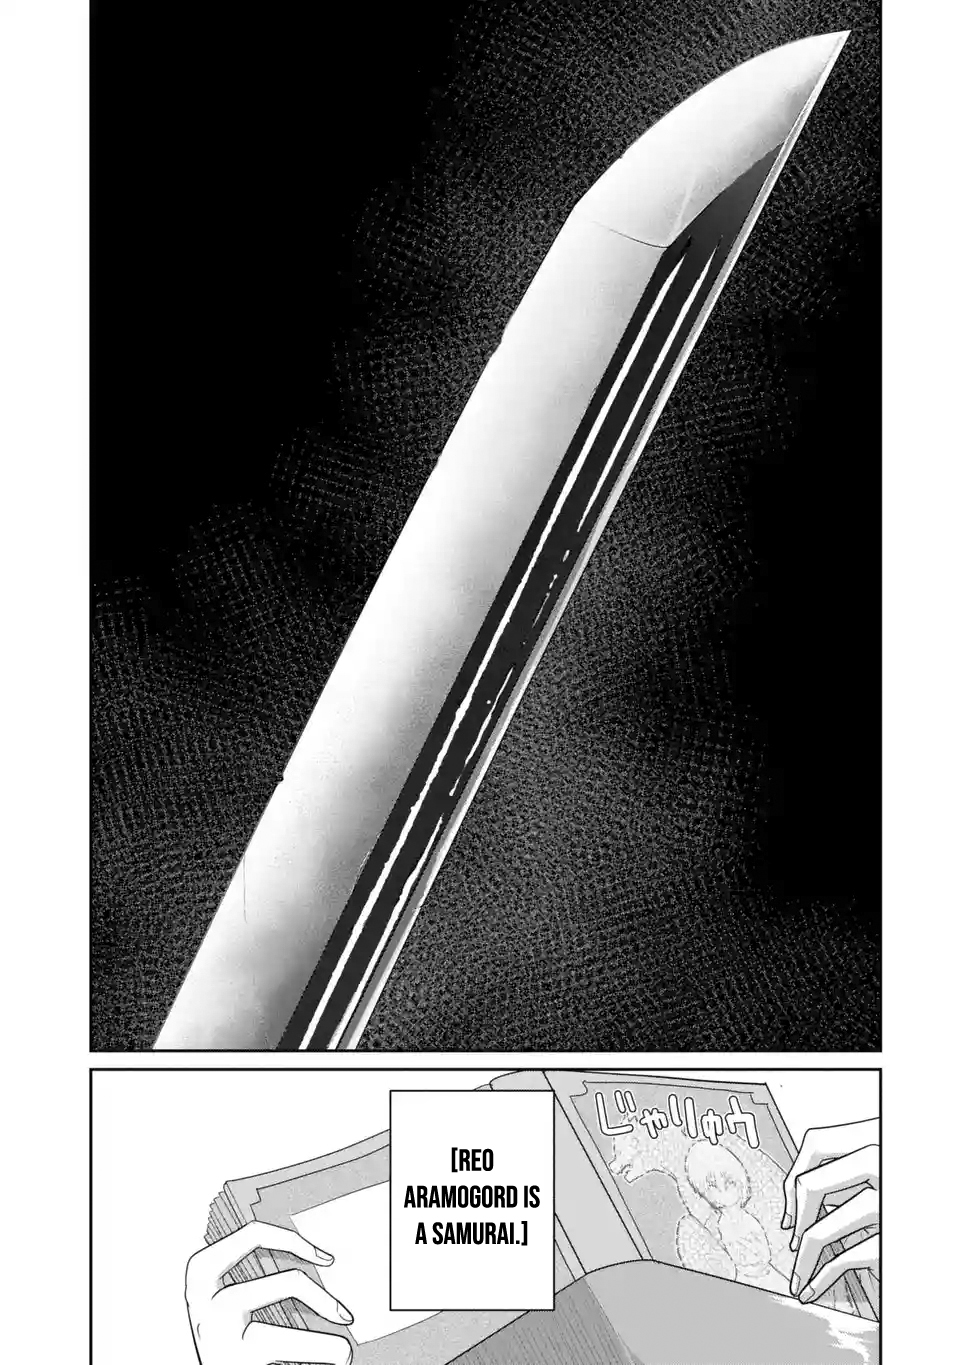 Itsuka Kamen wo Nugu Tame ni ~Warau Kishin to Yumemiru Dorei~ Vol. 1 Ch. 1.1 Demon LandLord